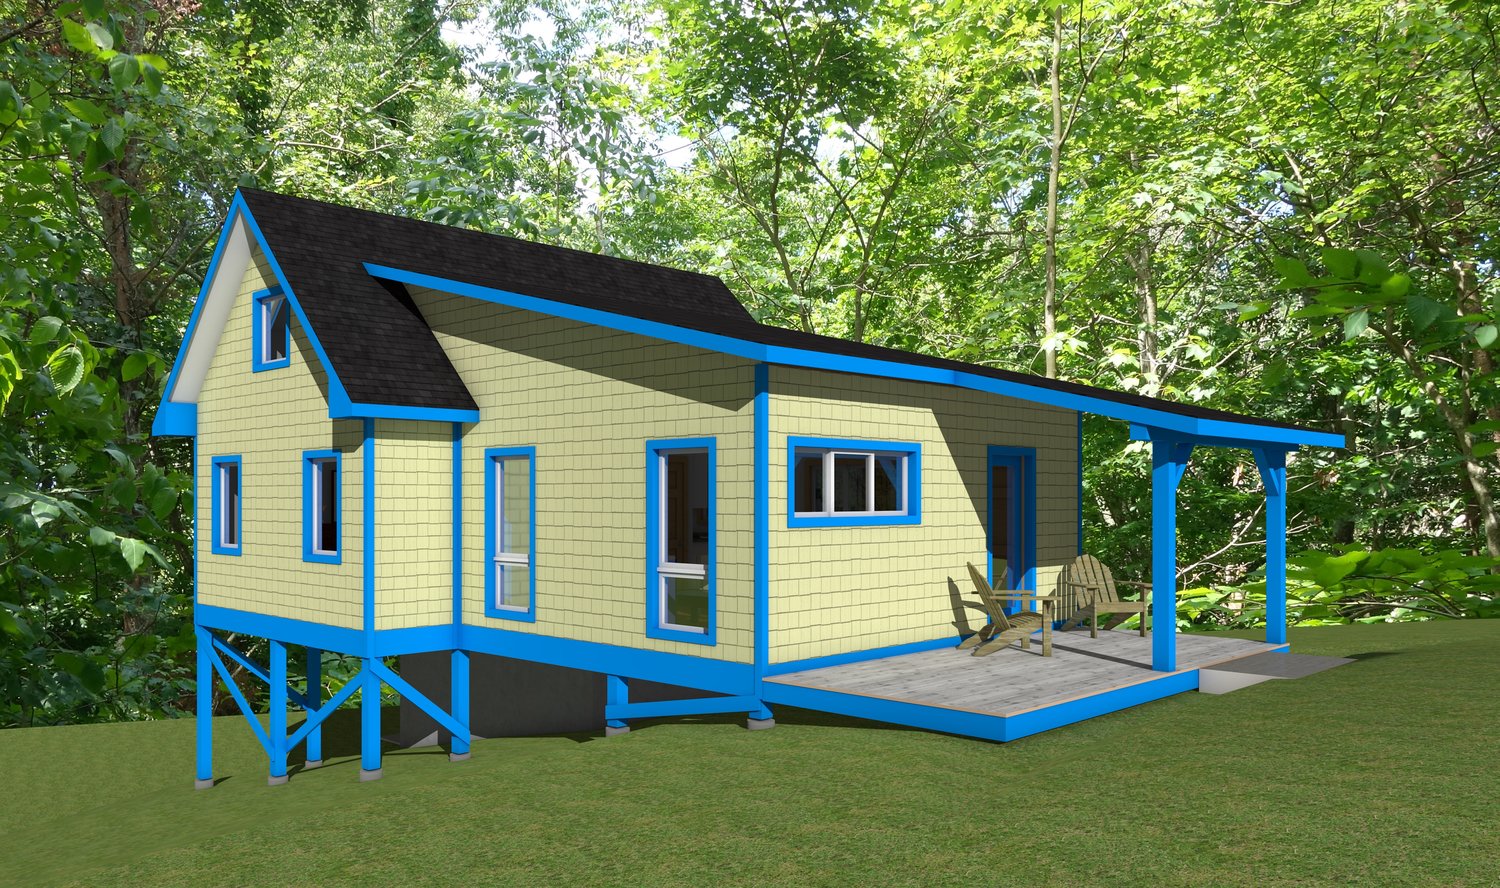 Skia Design Affordable Custom Home Design Plans New Homes